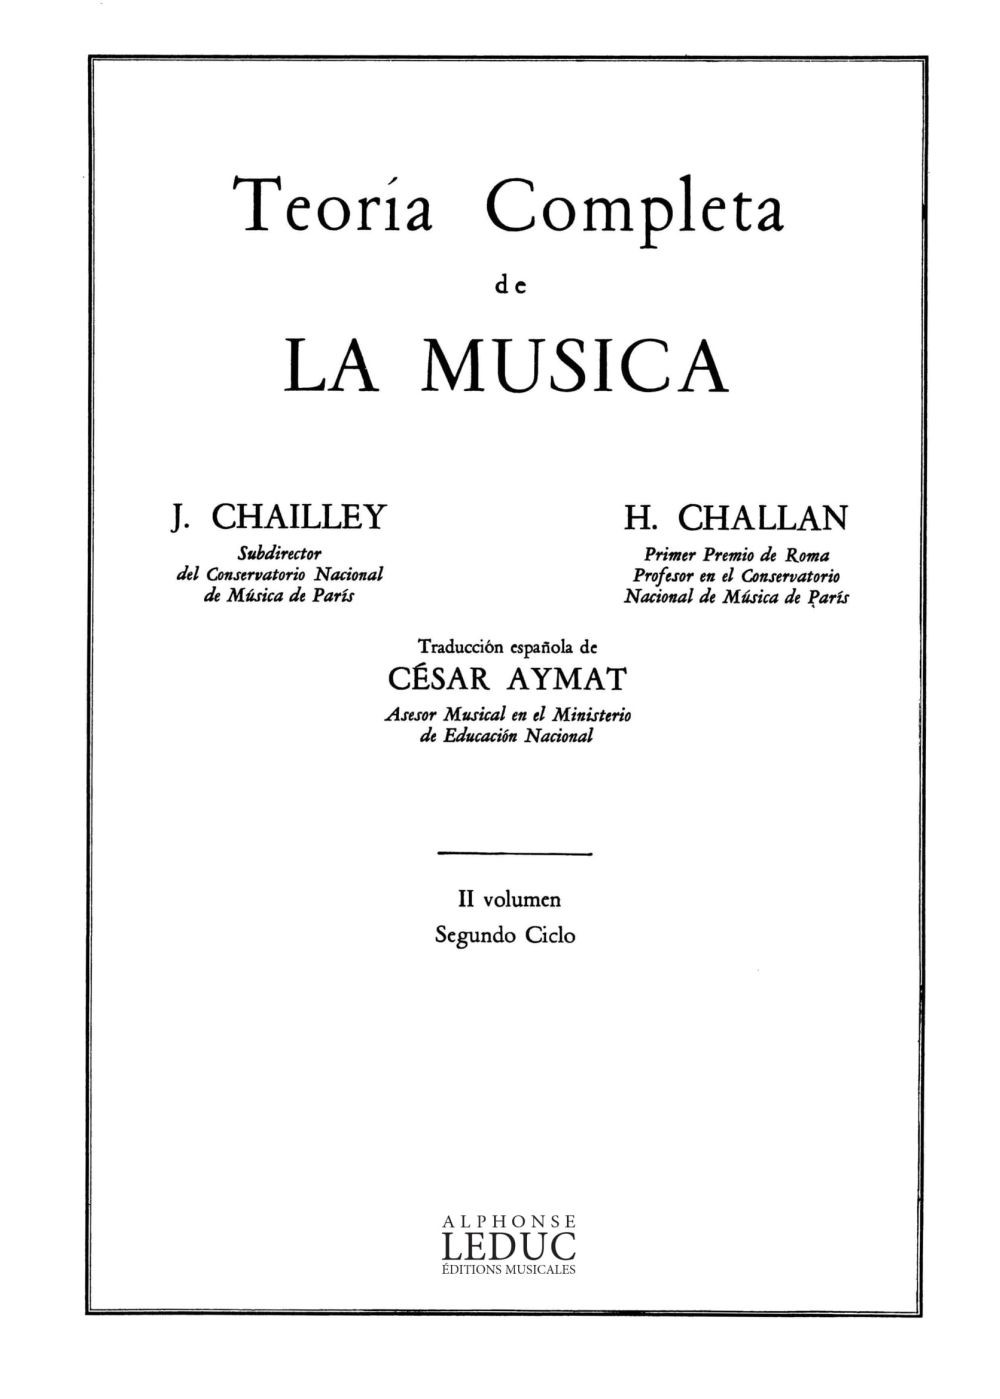 Teoría completa de la música, vol. II